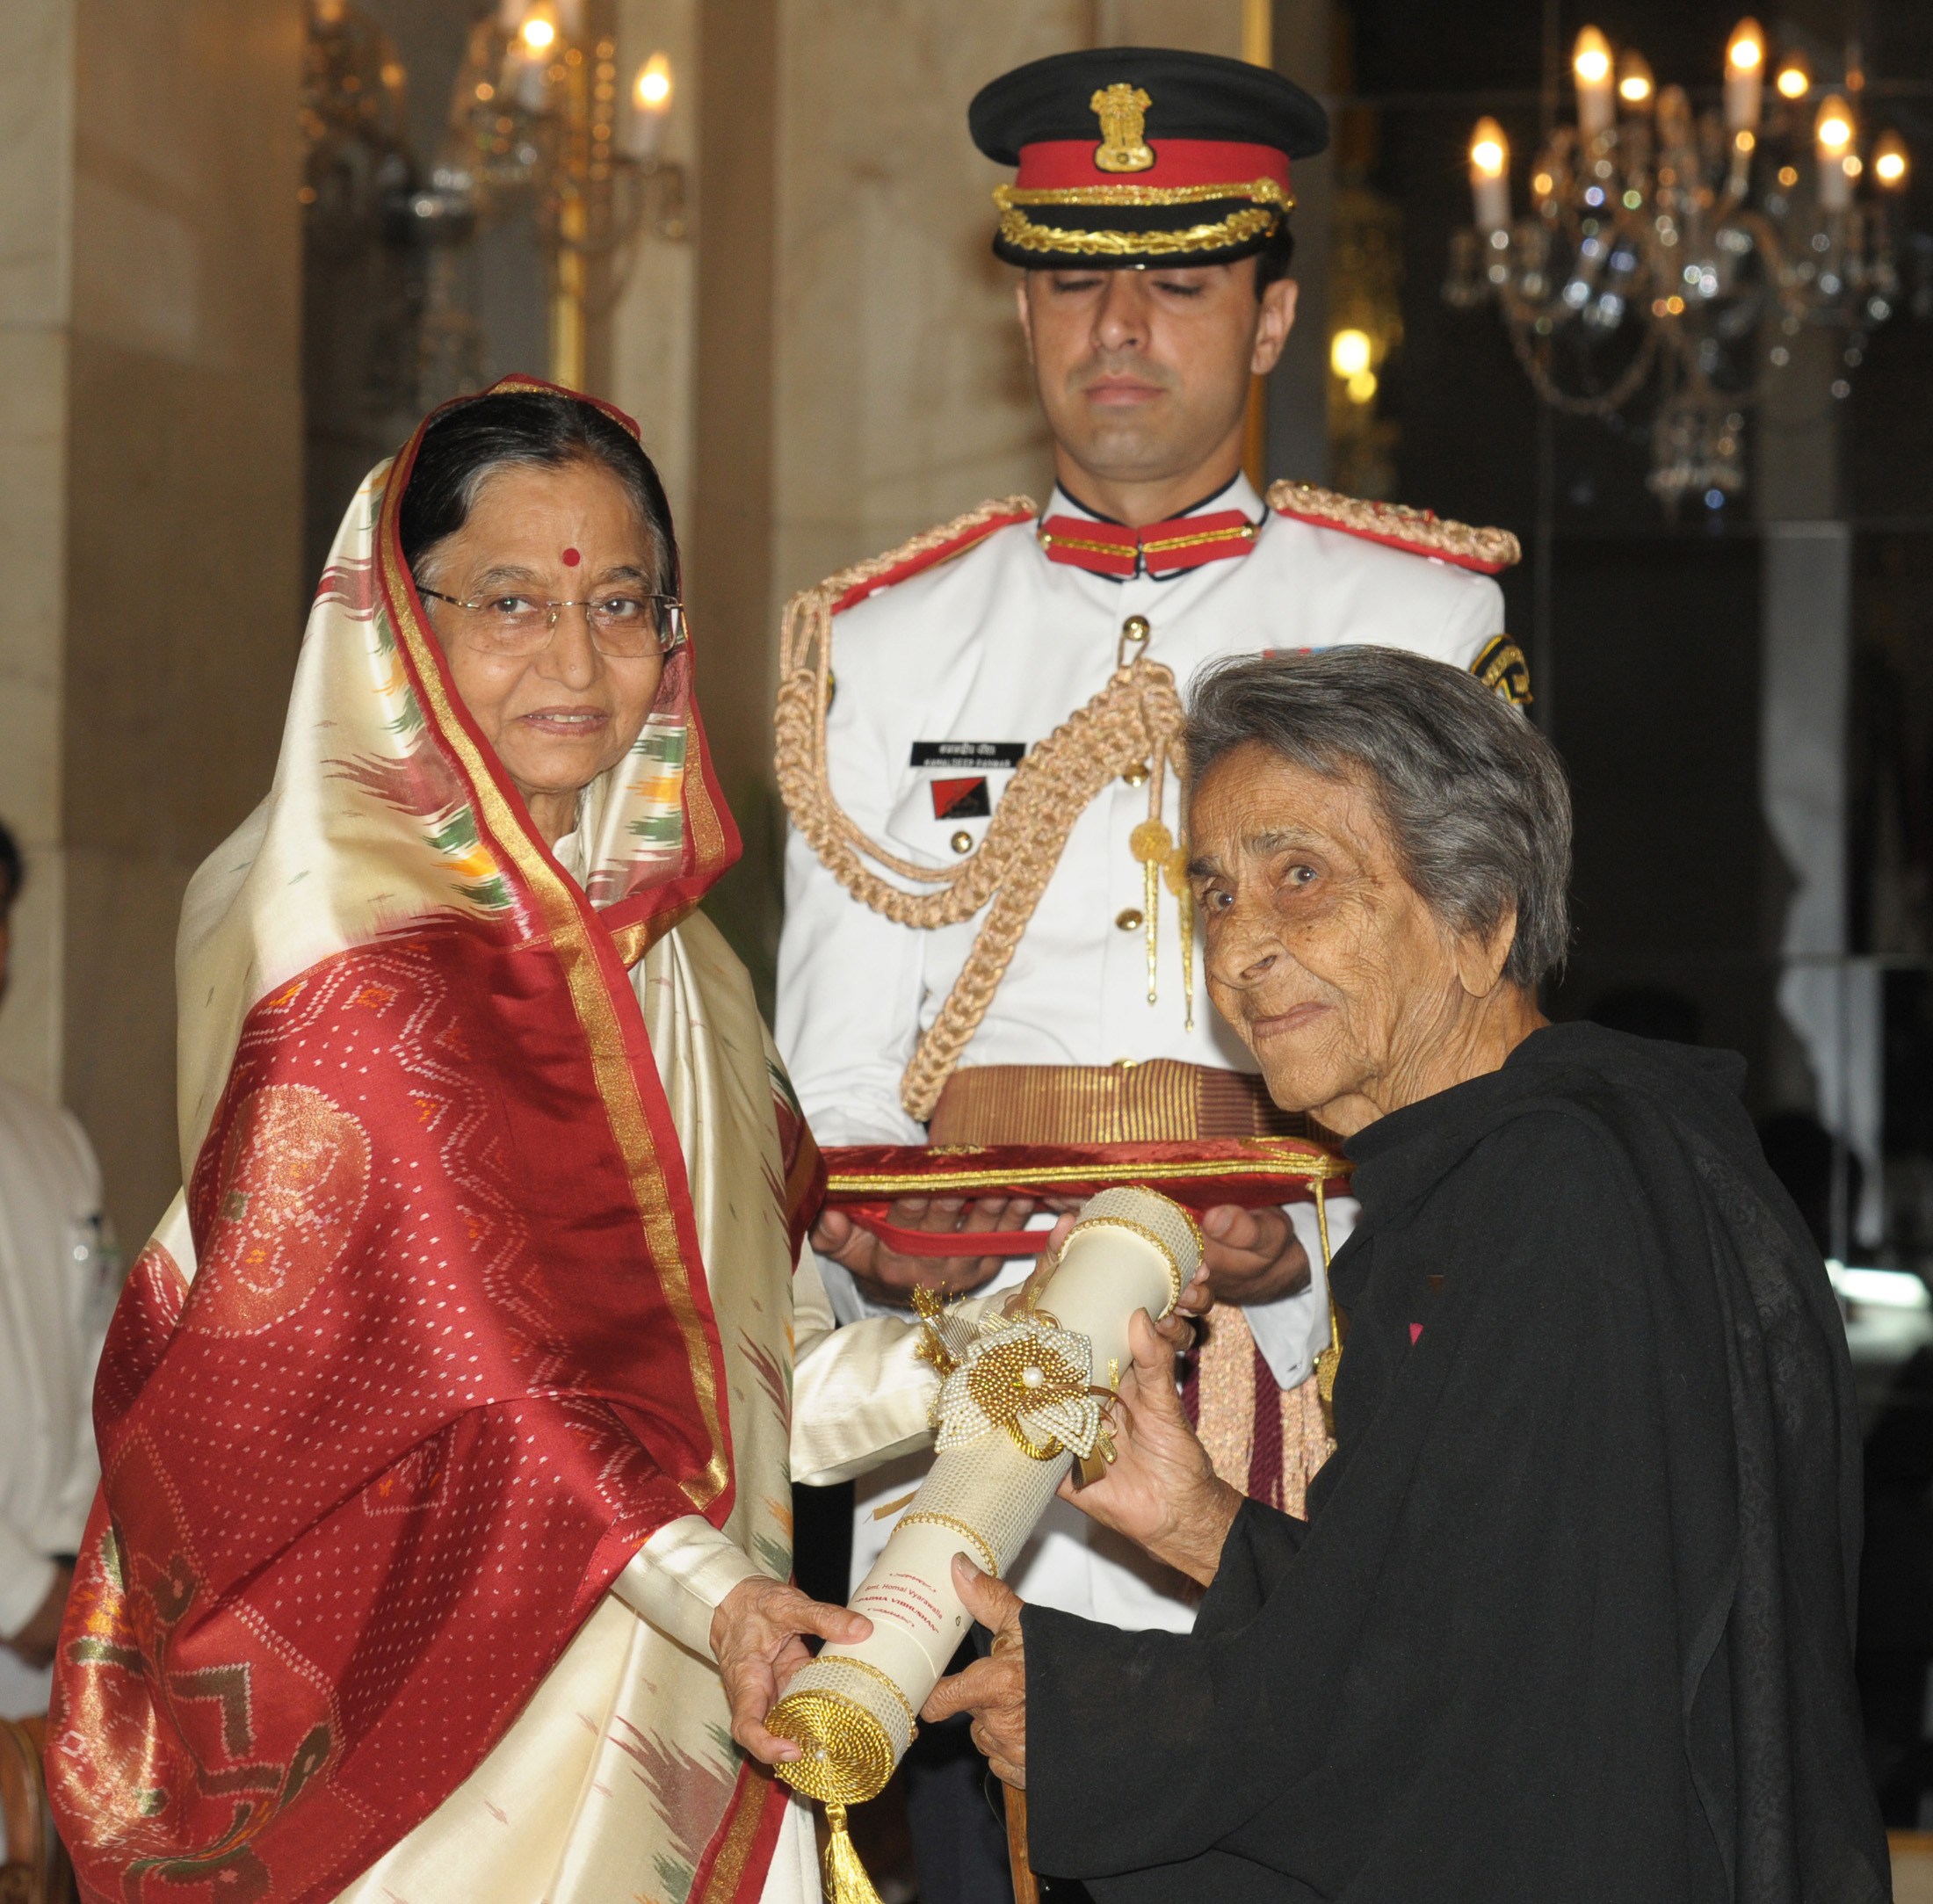 अध्यक्षा, श्रीमती. श्रीमती प्रतिभा देवीसिंह पाटील यांना पद्मविभूषण पुरस्कार प्रदान करताना. होमाई व्यारावाला, एप्रिल रोजी नवी दिल्लीतील राष्ट्रपती भवनात, एका गुंतवणूक समारंभात,